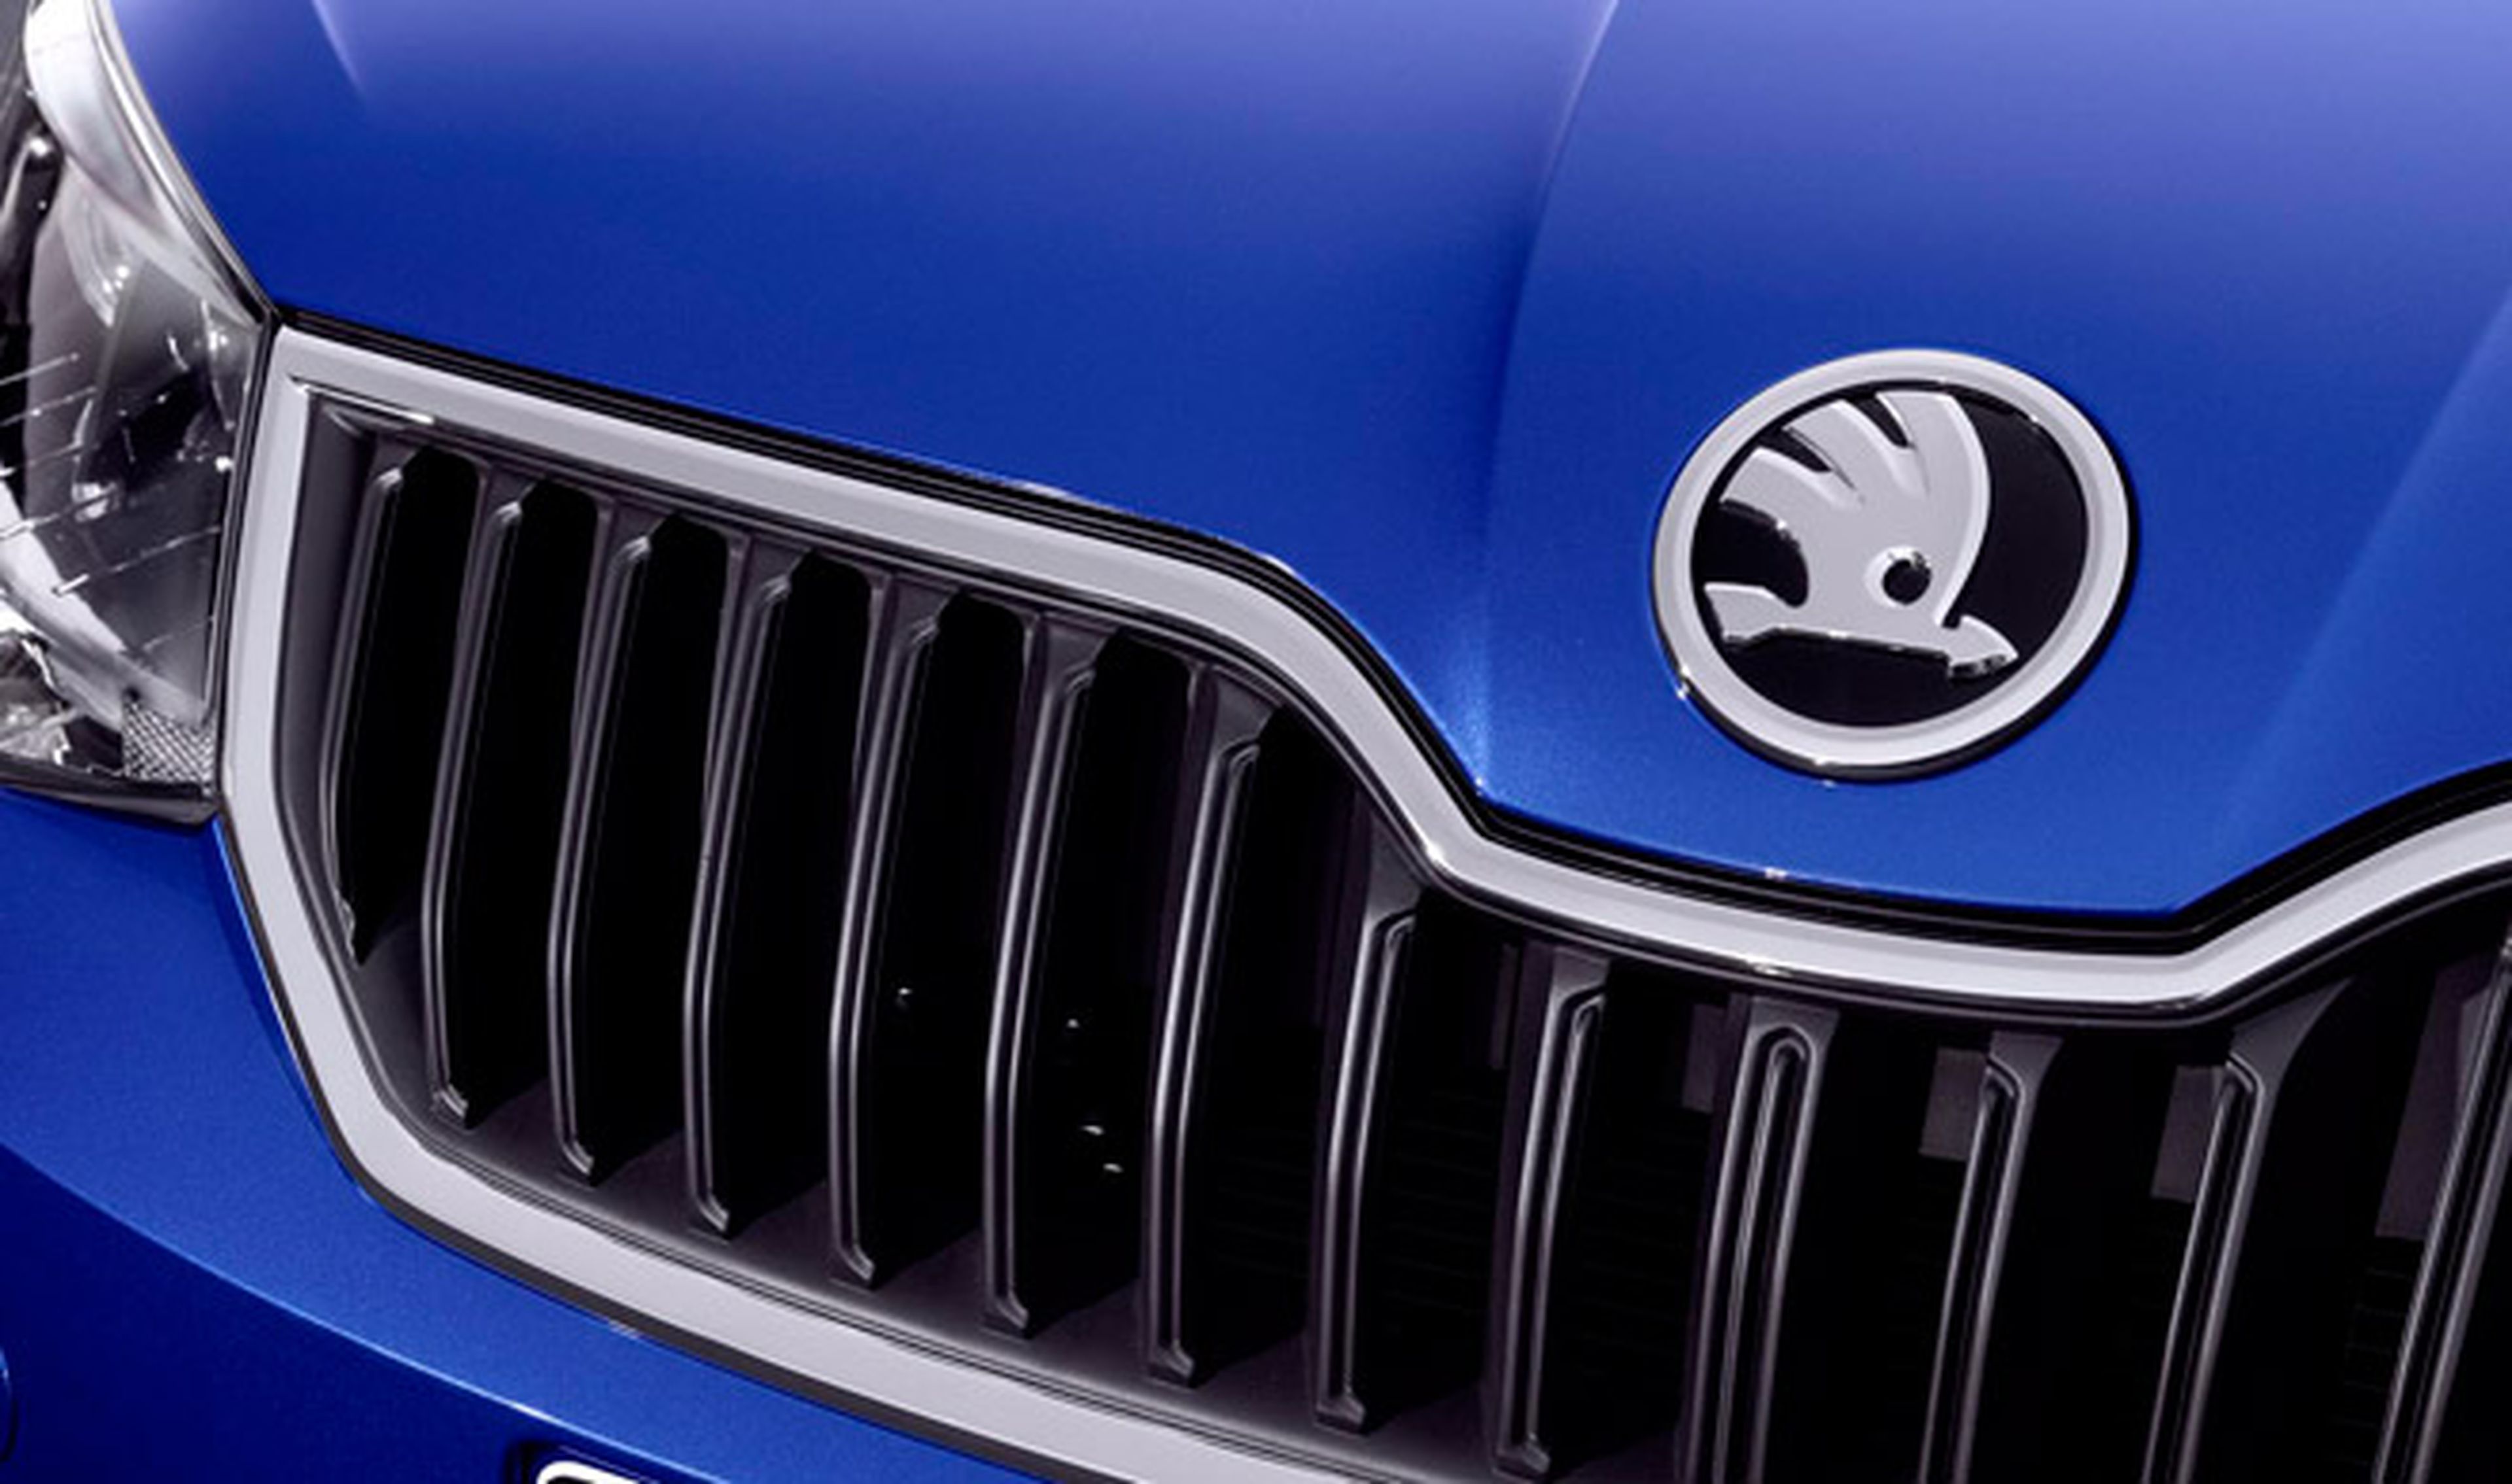 Skoda espera vender más de 1 millón de coches en 2014